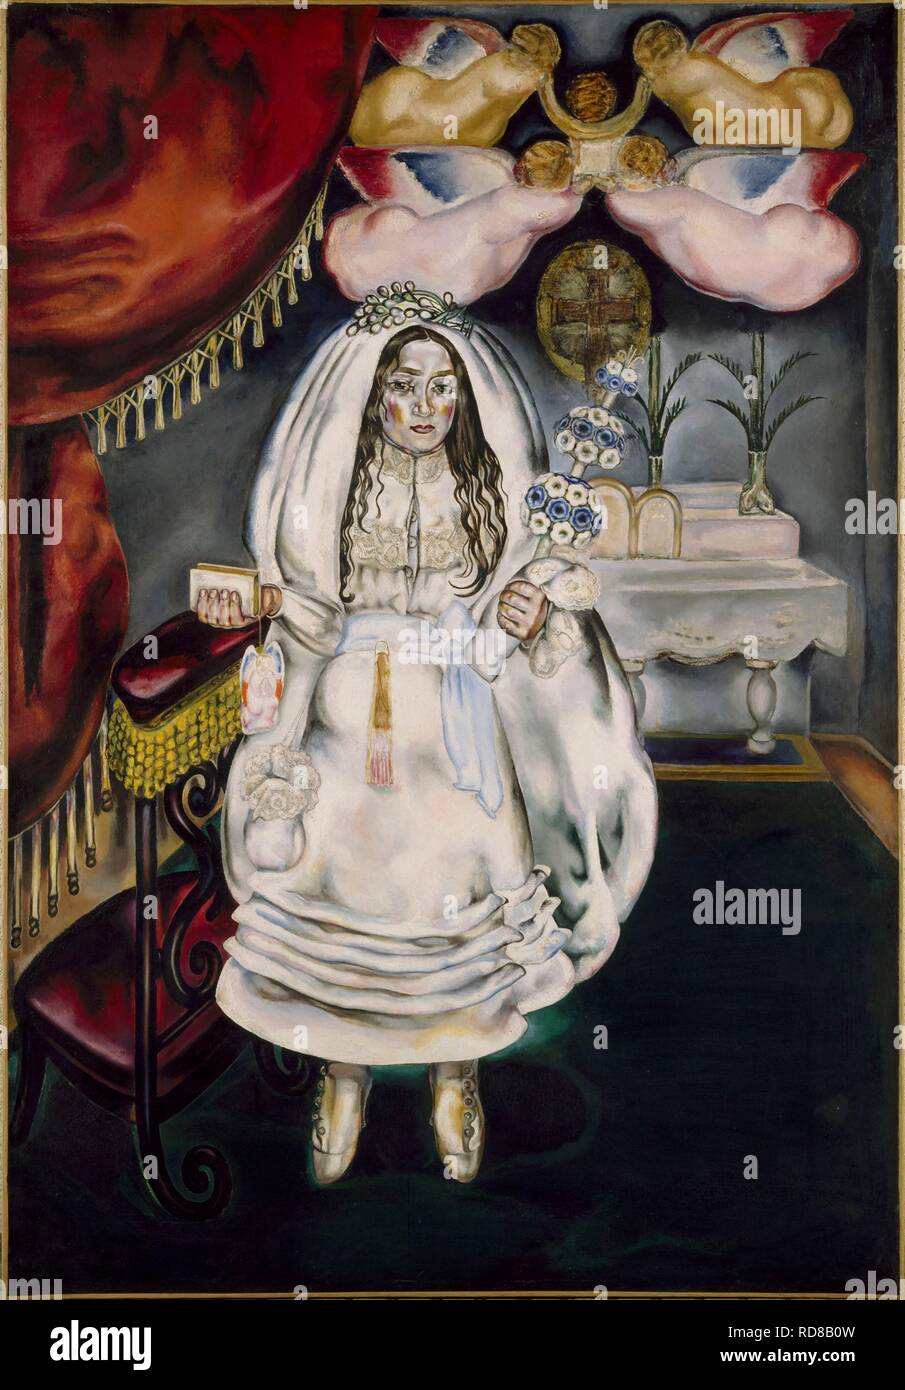 La comulgante (fille à sa Première Communion). Musée : Museo Nacional Centro de Arte Reina Sofía, Madrid. Auteur : BLANCHARD, MARIA. Banque D'Images